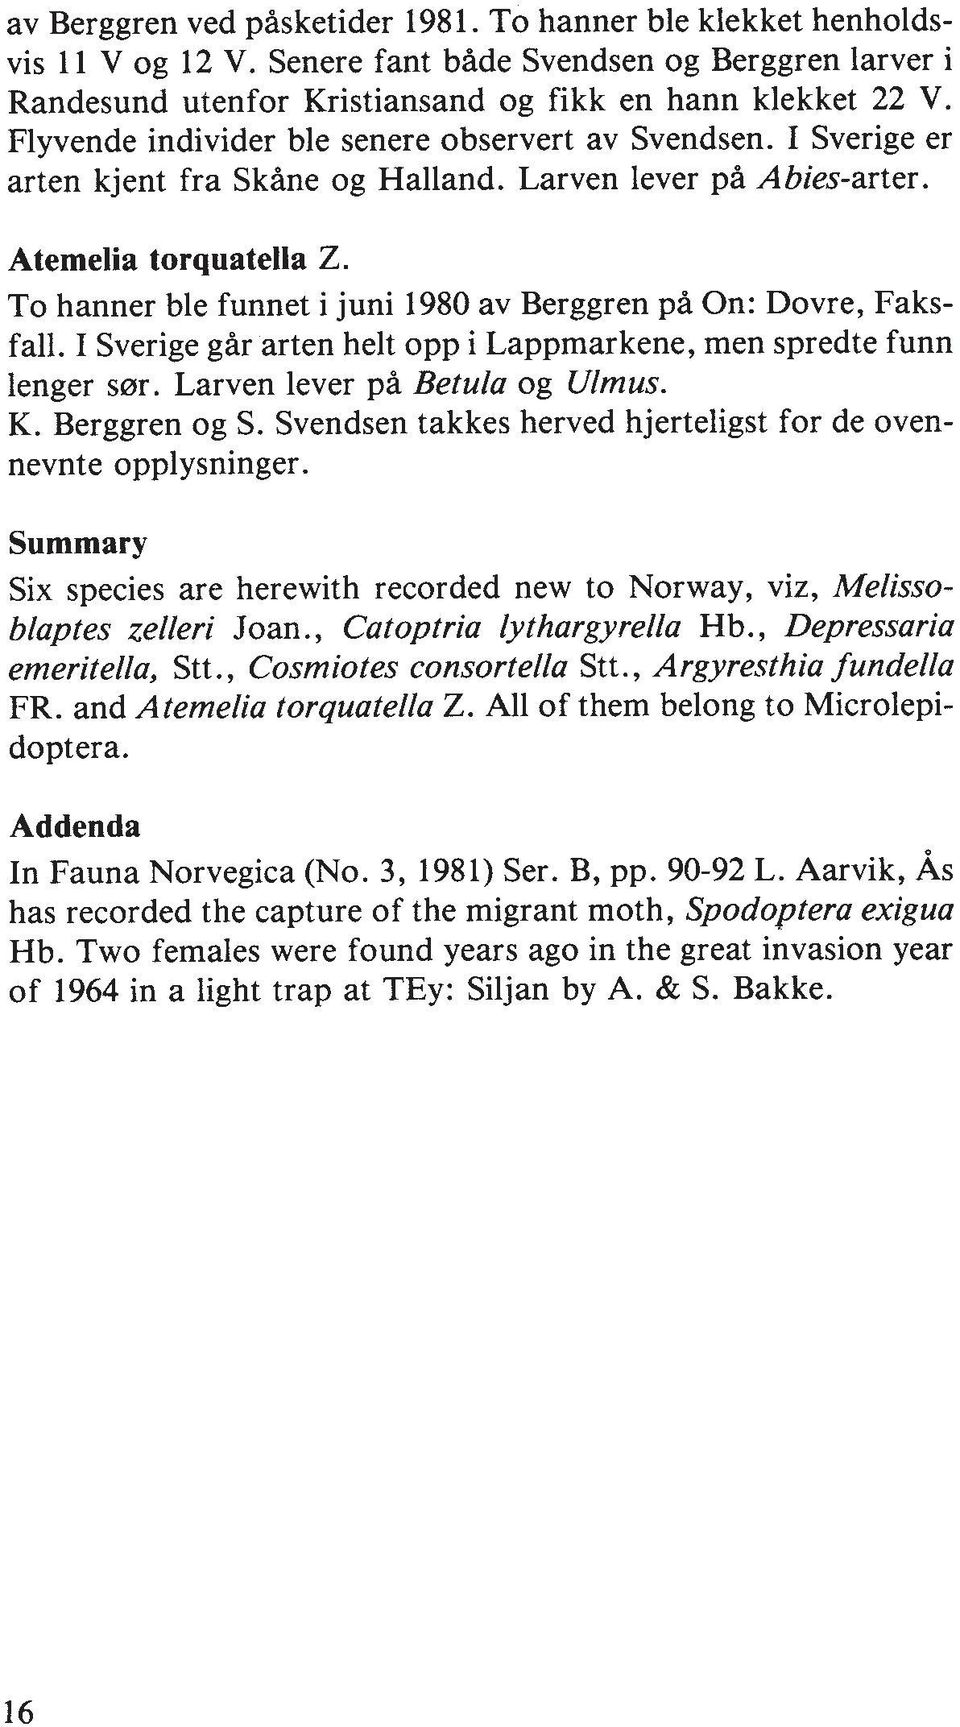 To hanner ble funnet i juni 1980 av Berggren pi On: Dovre, Faksfall. I Sverige gar arten helt opp i Lappmarkene, men spredte funn lenger s0r. Larven lever pa Betula og Ulmus. K. Berggren og S.